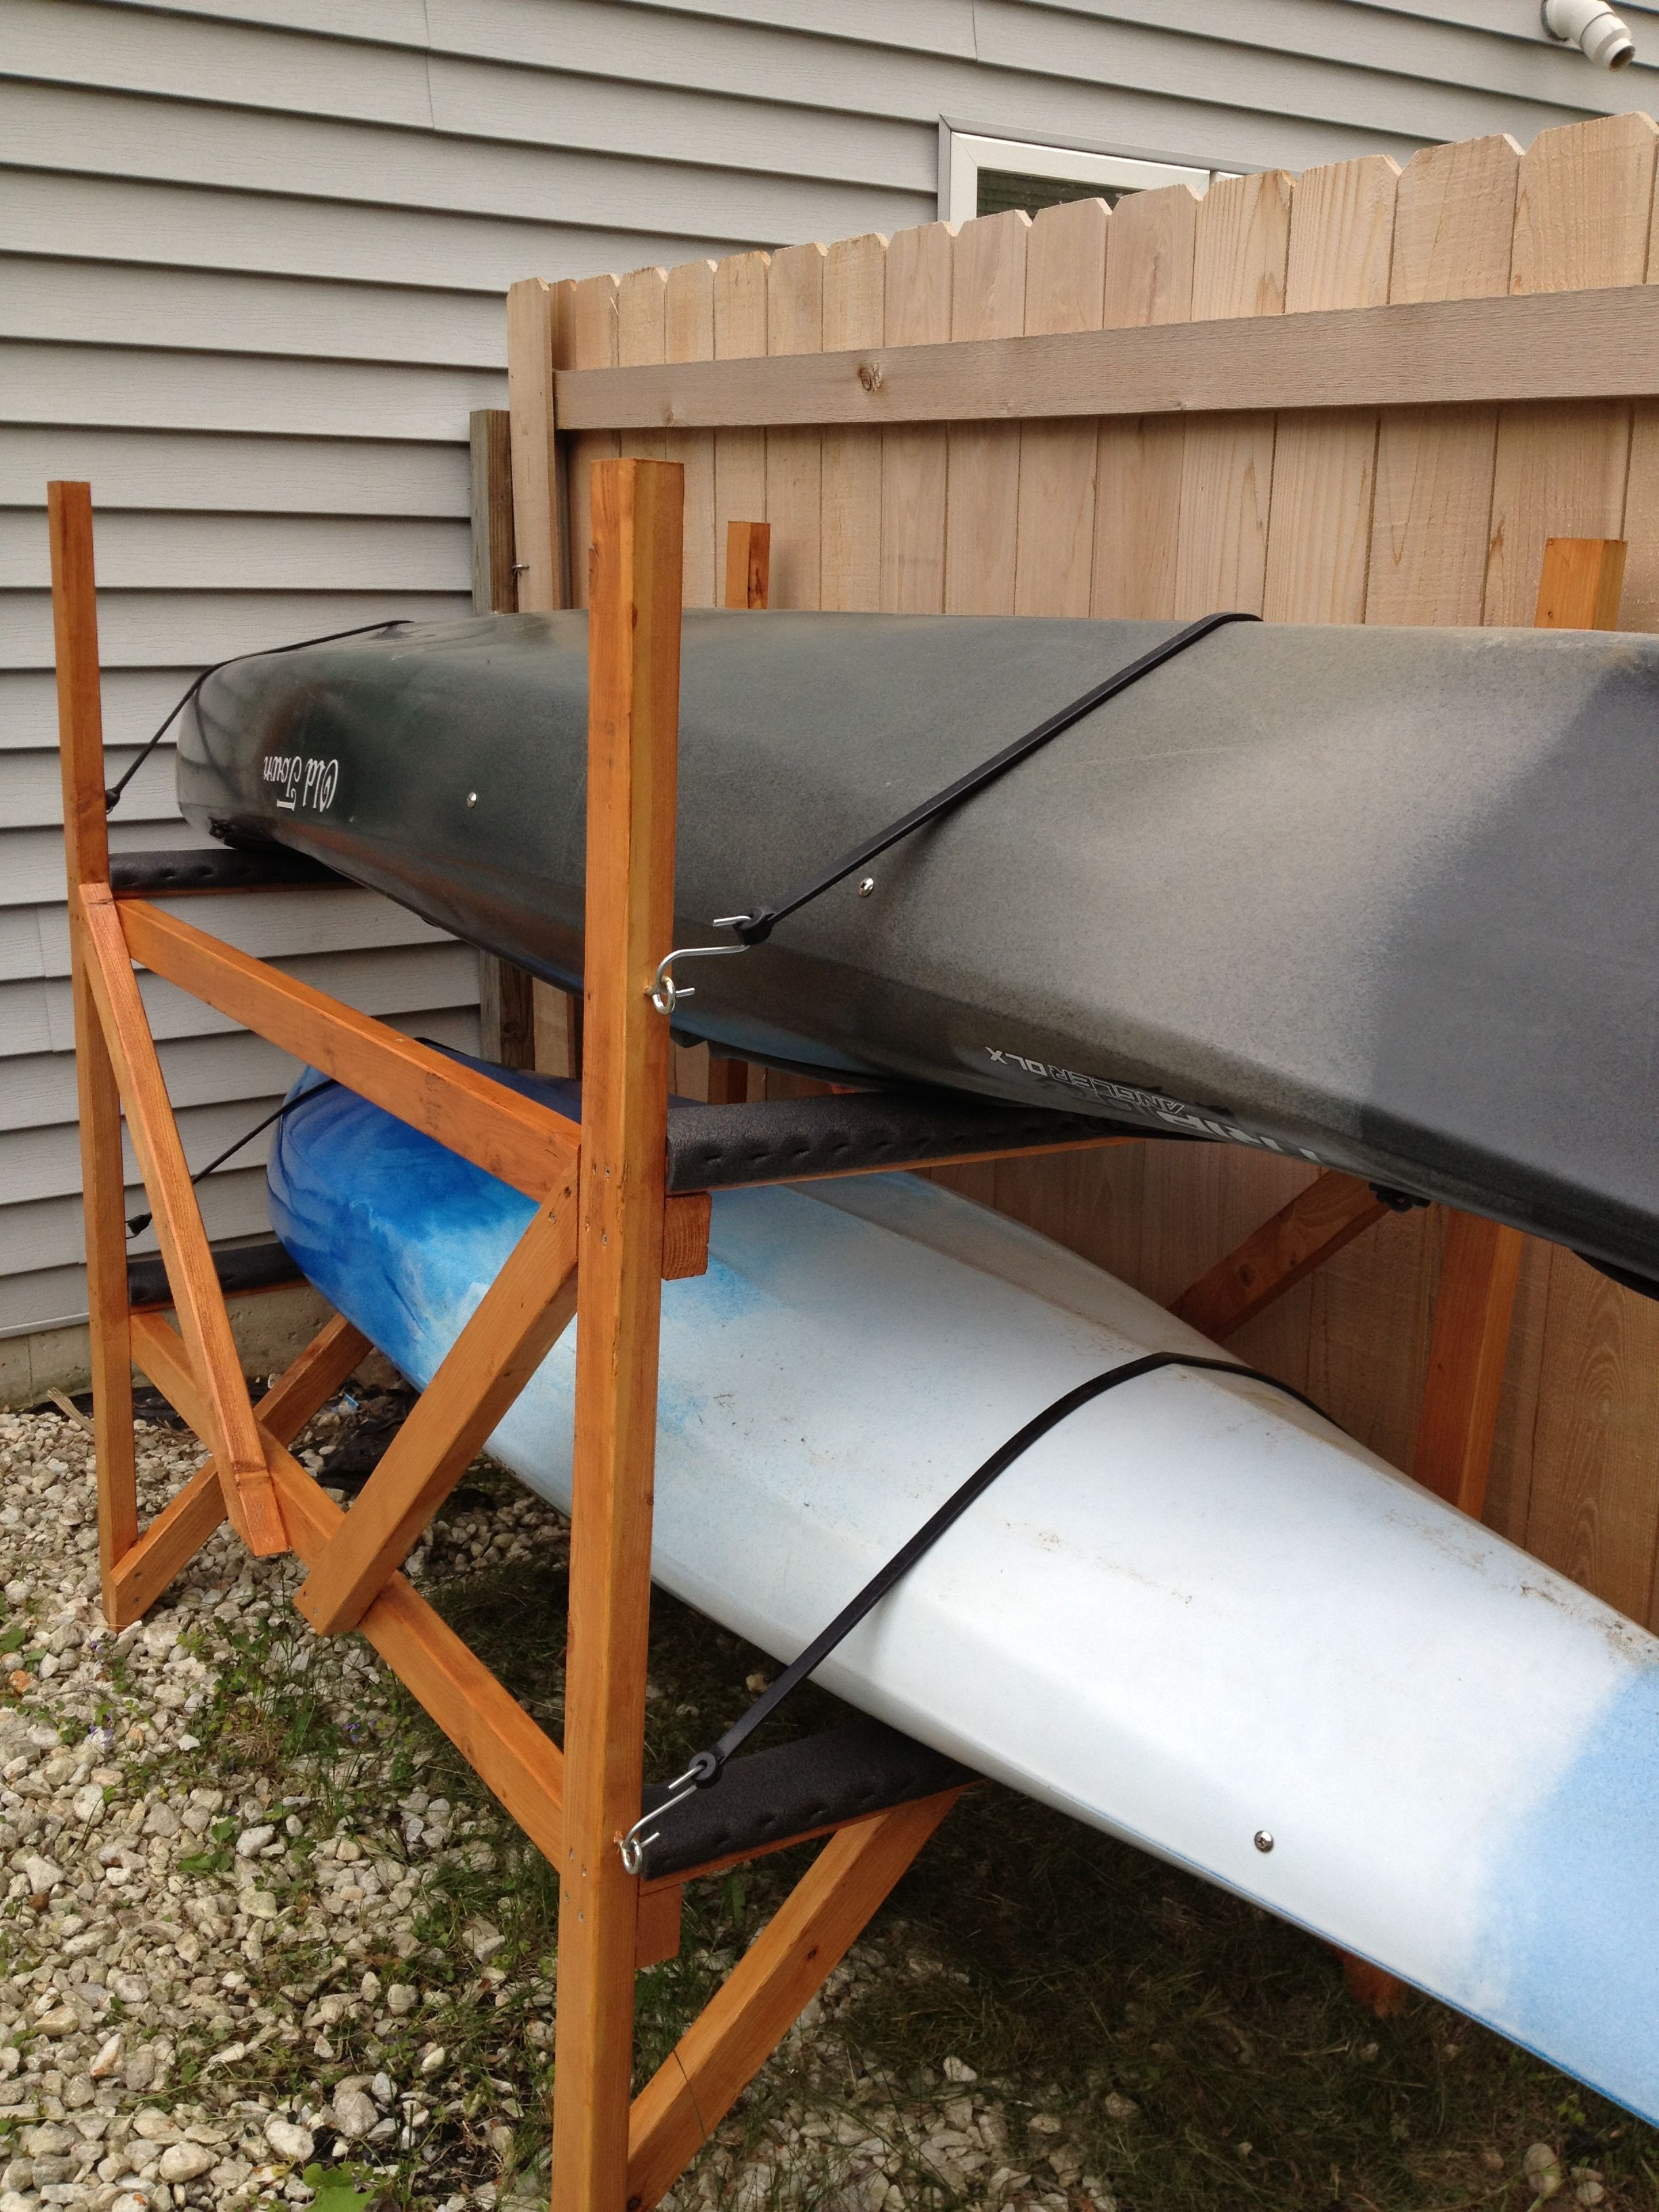 Best ideas about DIY Kayak Storage Rack
. Save or Pin DIY Kayak Rack Kayaks & Canoes Pinterest Now.